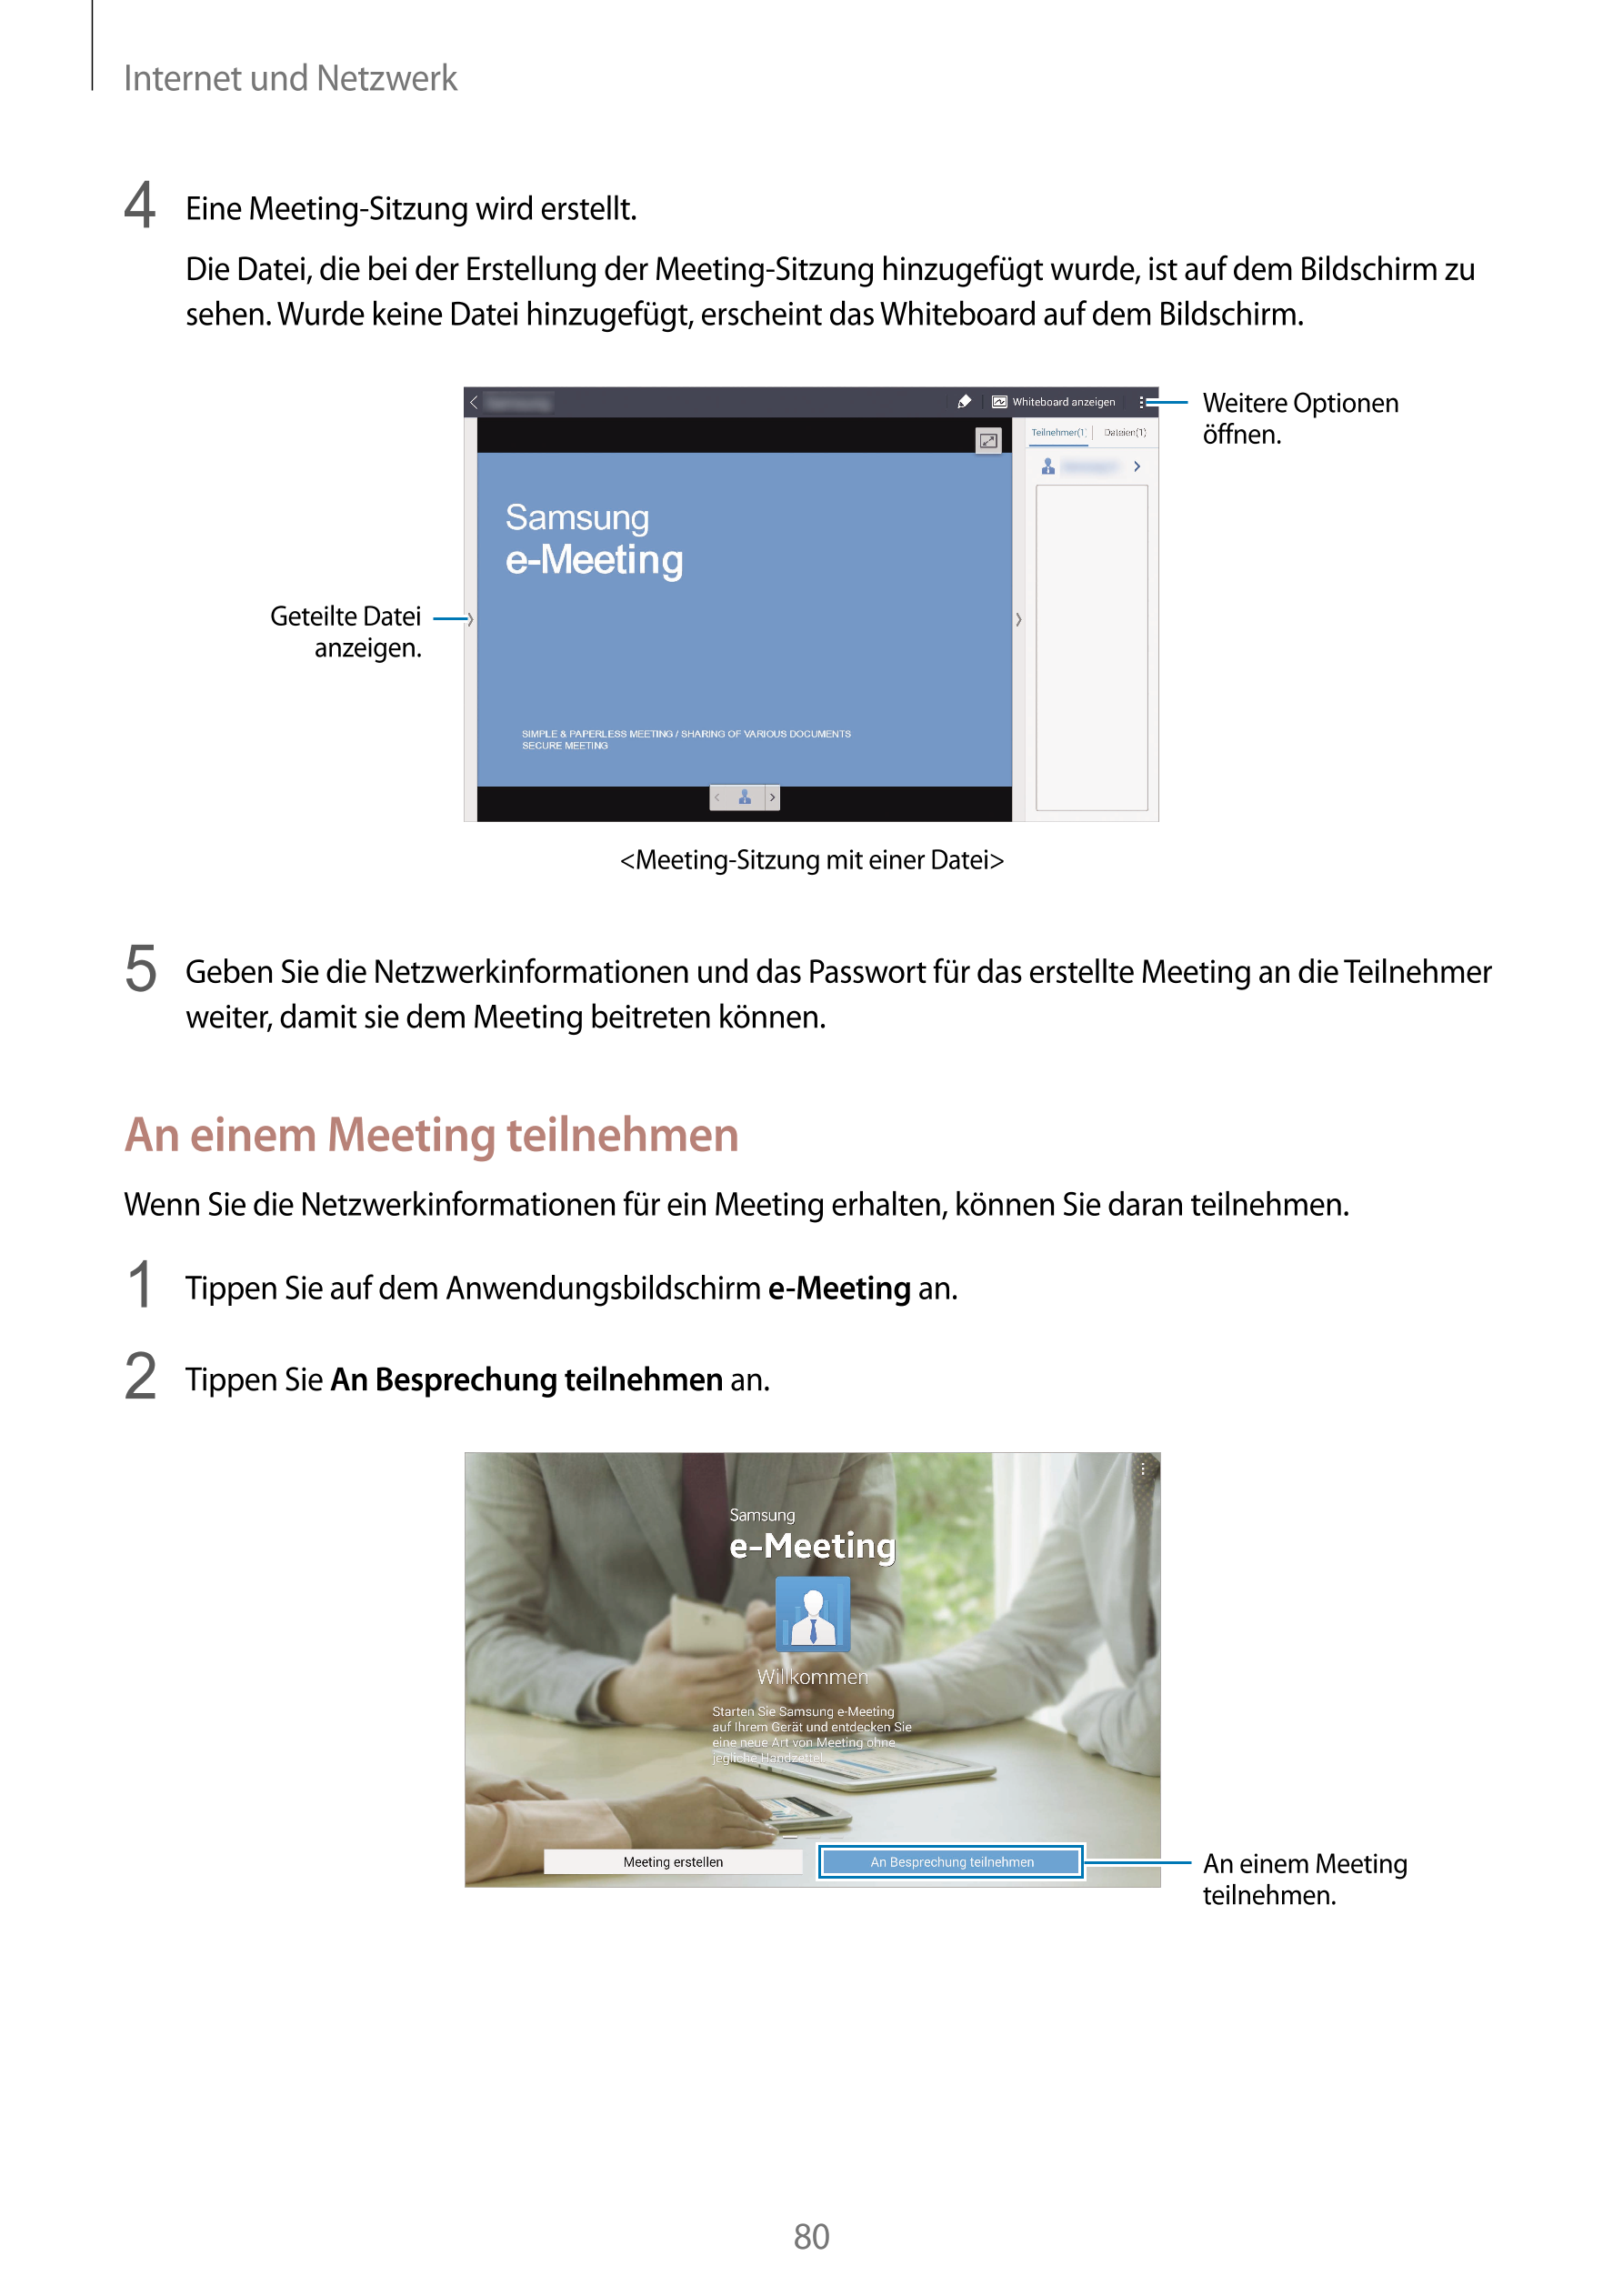 Internet und Netzwerk
4  Eine Meeting-Sitzung wird erstellt.
Die Datei, die bei der Erstellung der Meeting-Sitzung hinzugefügt w